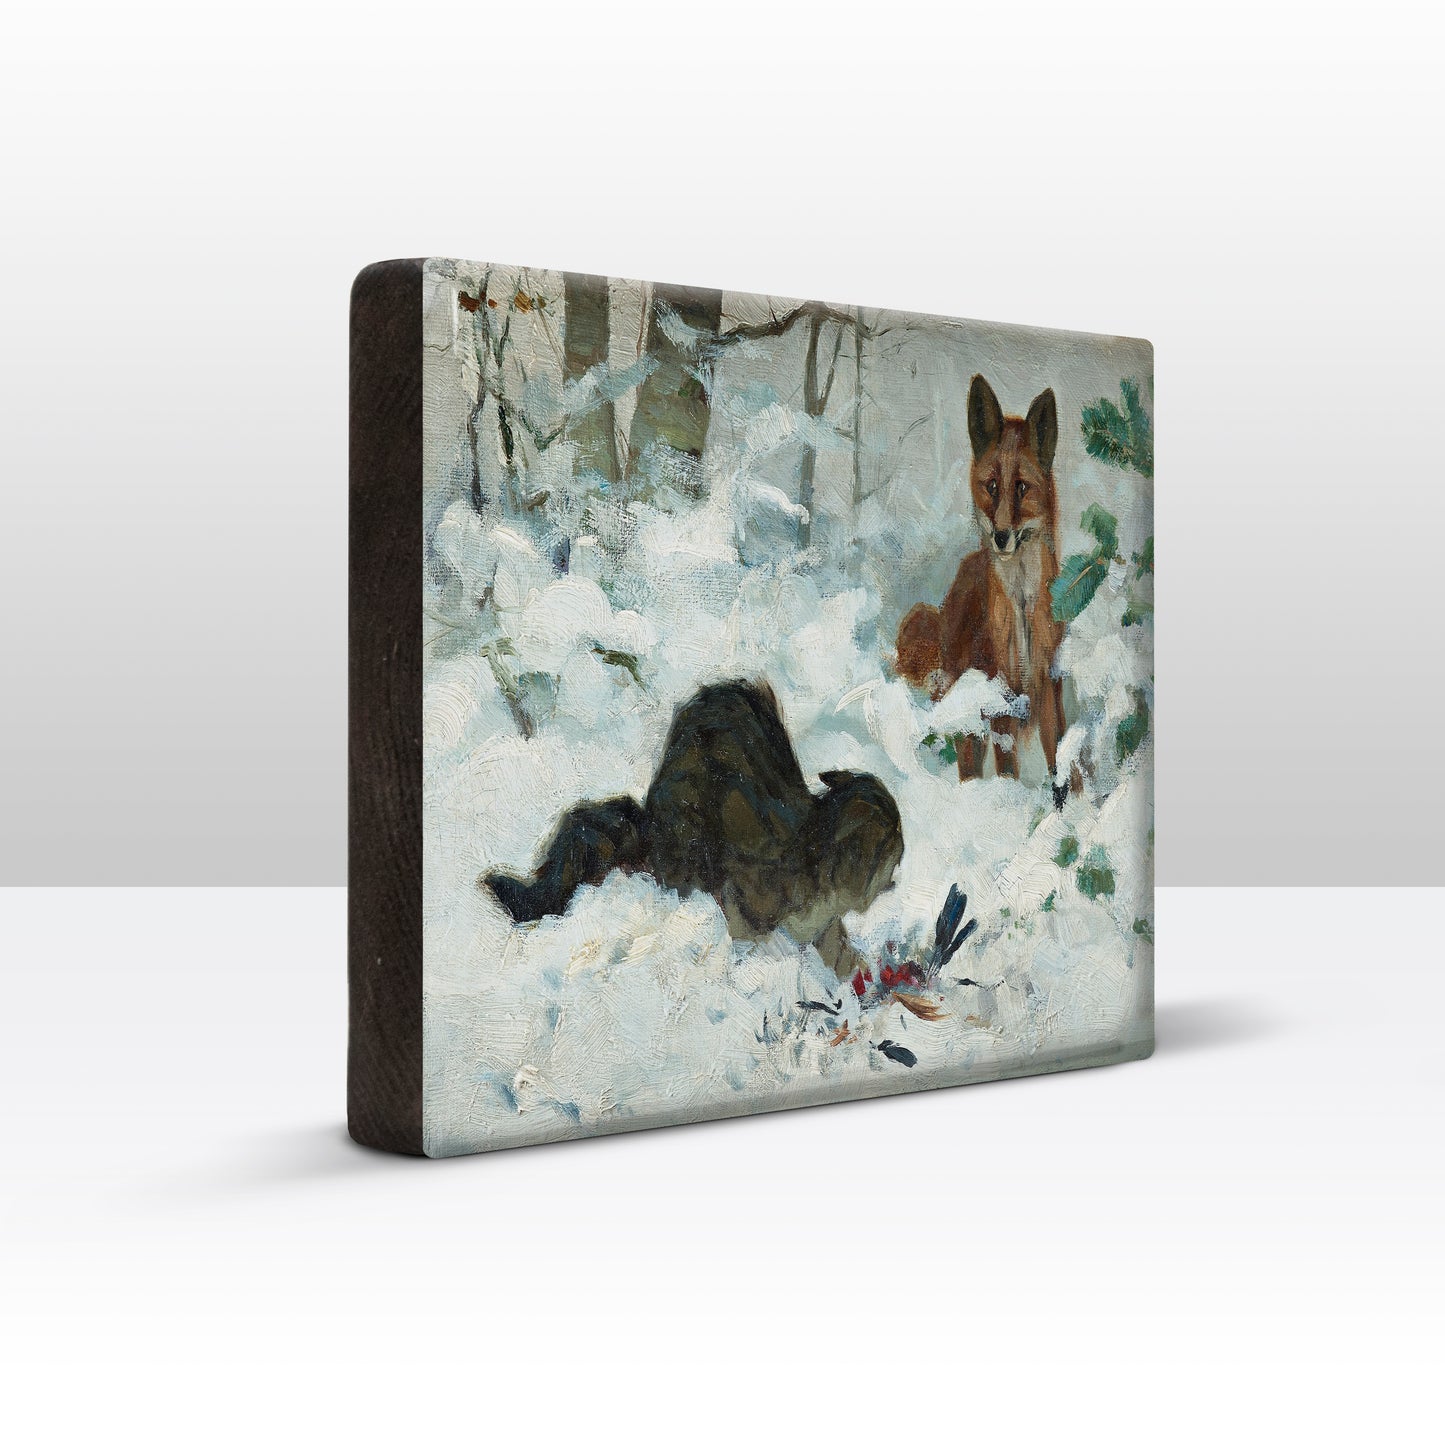 Laqueprint - Vos die een kat verrast - Bruno Liljefors - 30 x 19,5 cm - LP231